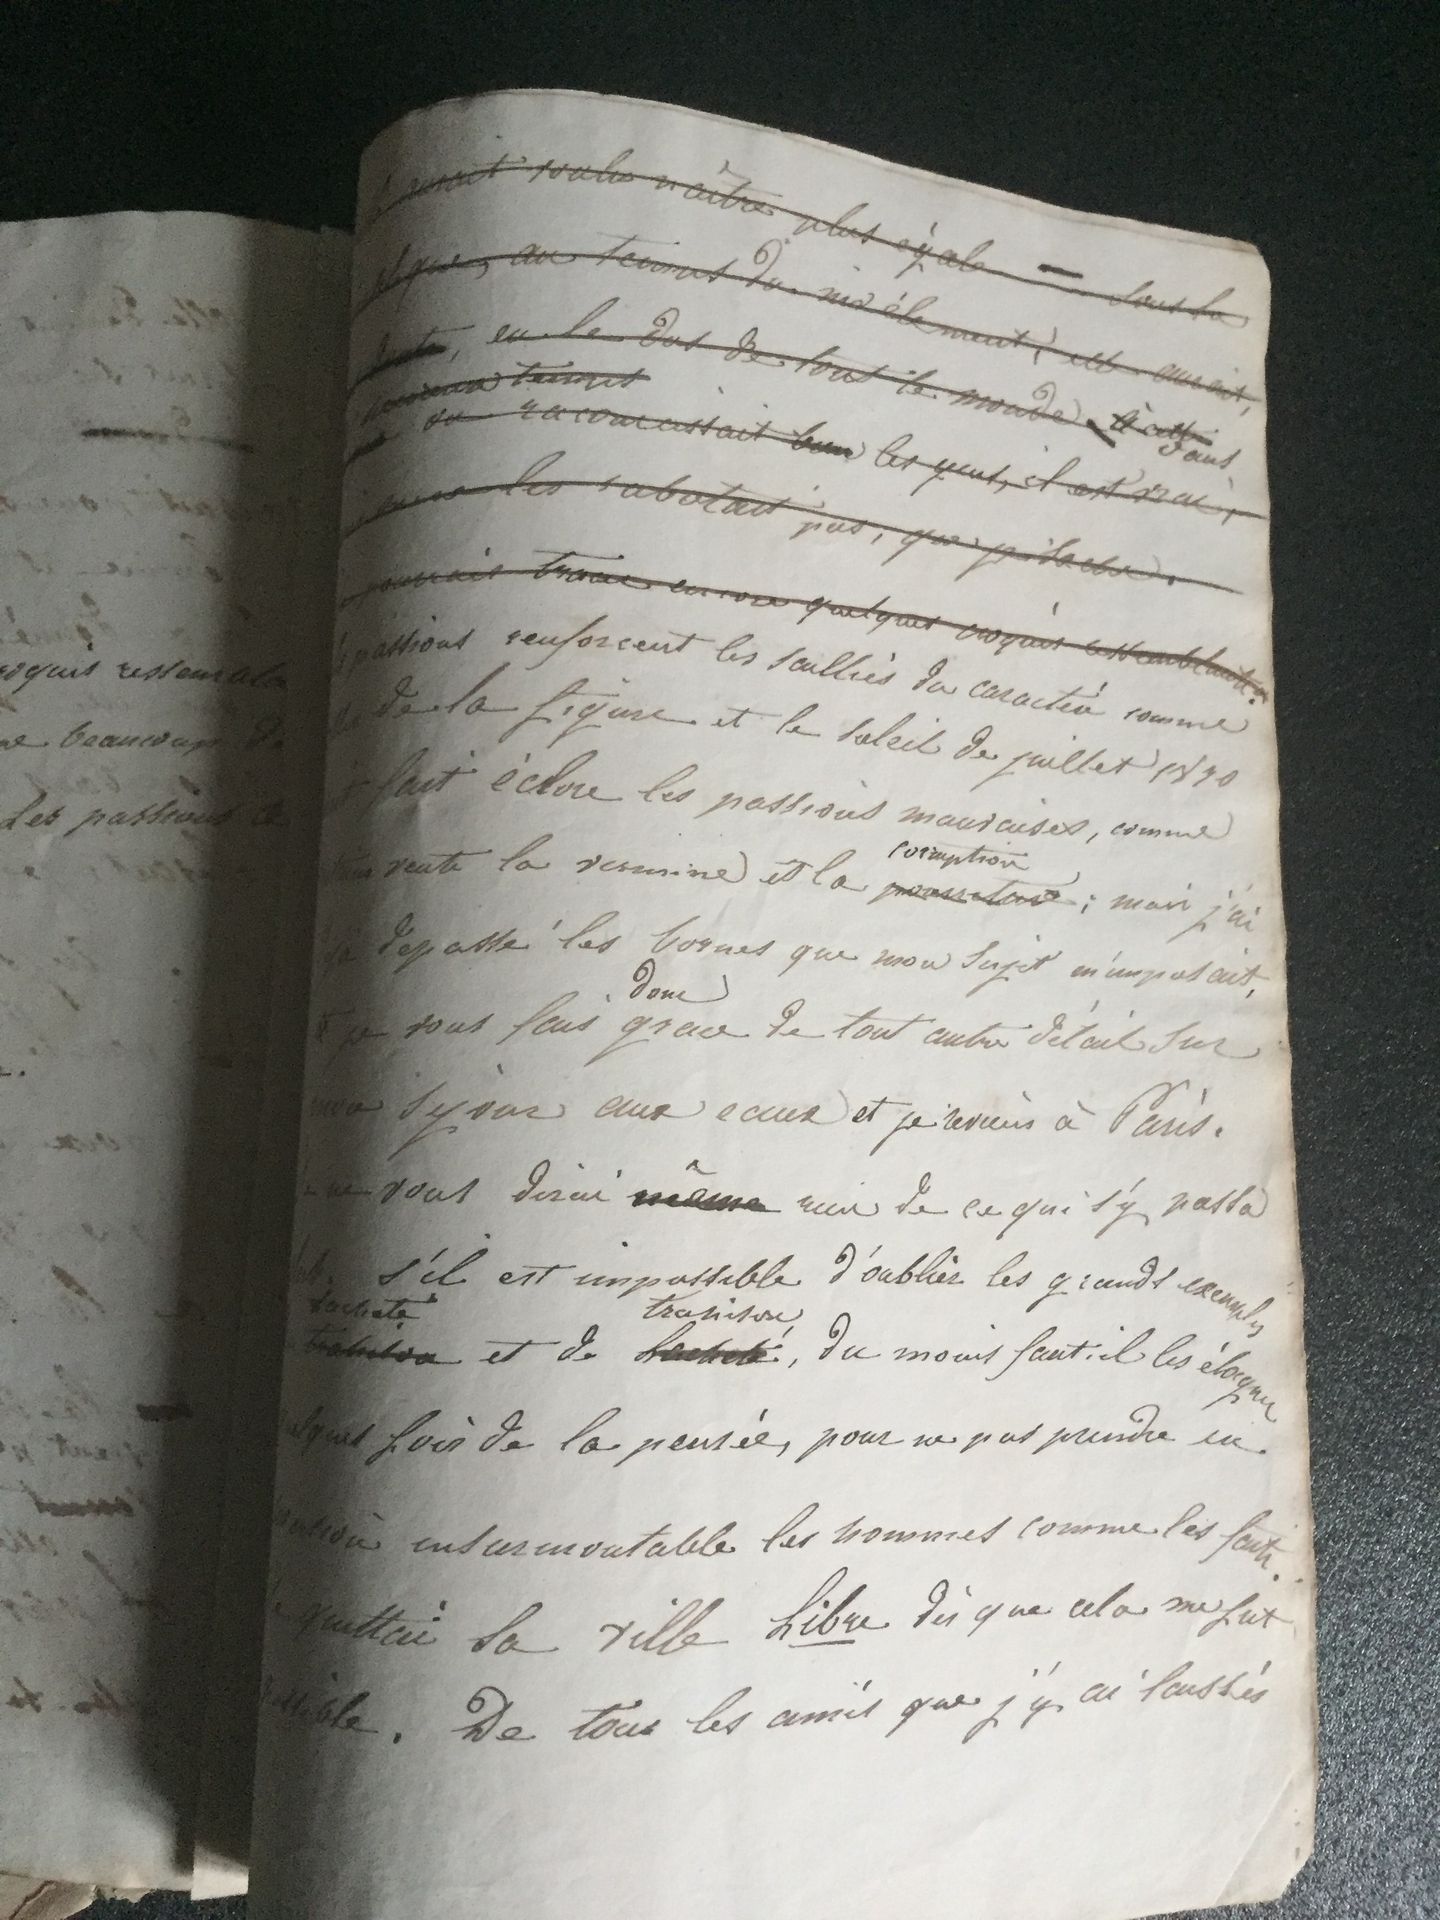 Null [REVOLUTION VON 1830] Manuskript mit dem Titel "Histoire d'un serin" (Gesch&hellip;